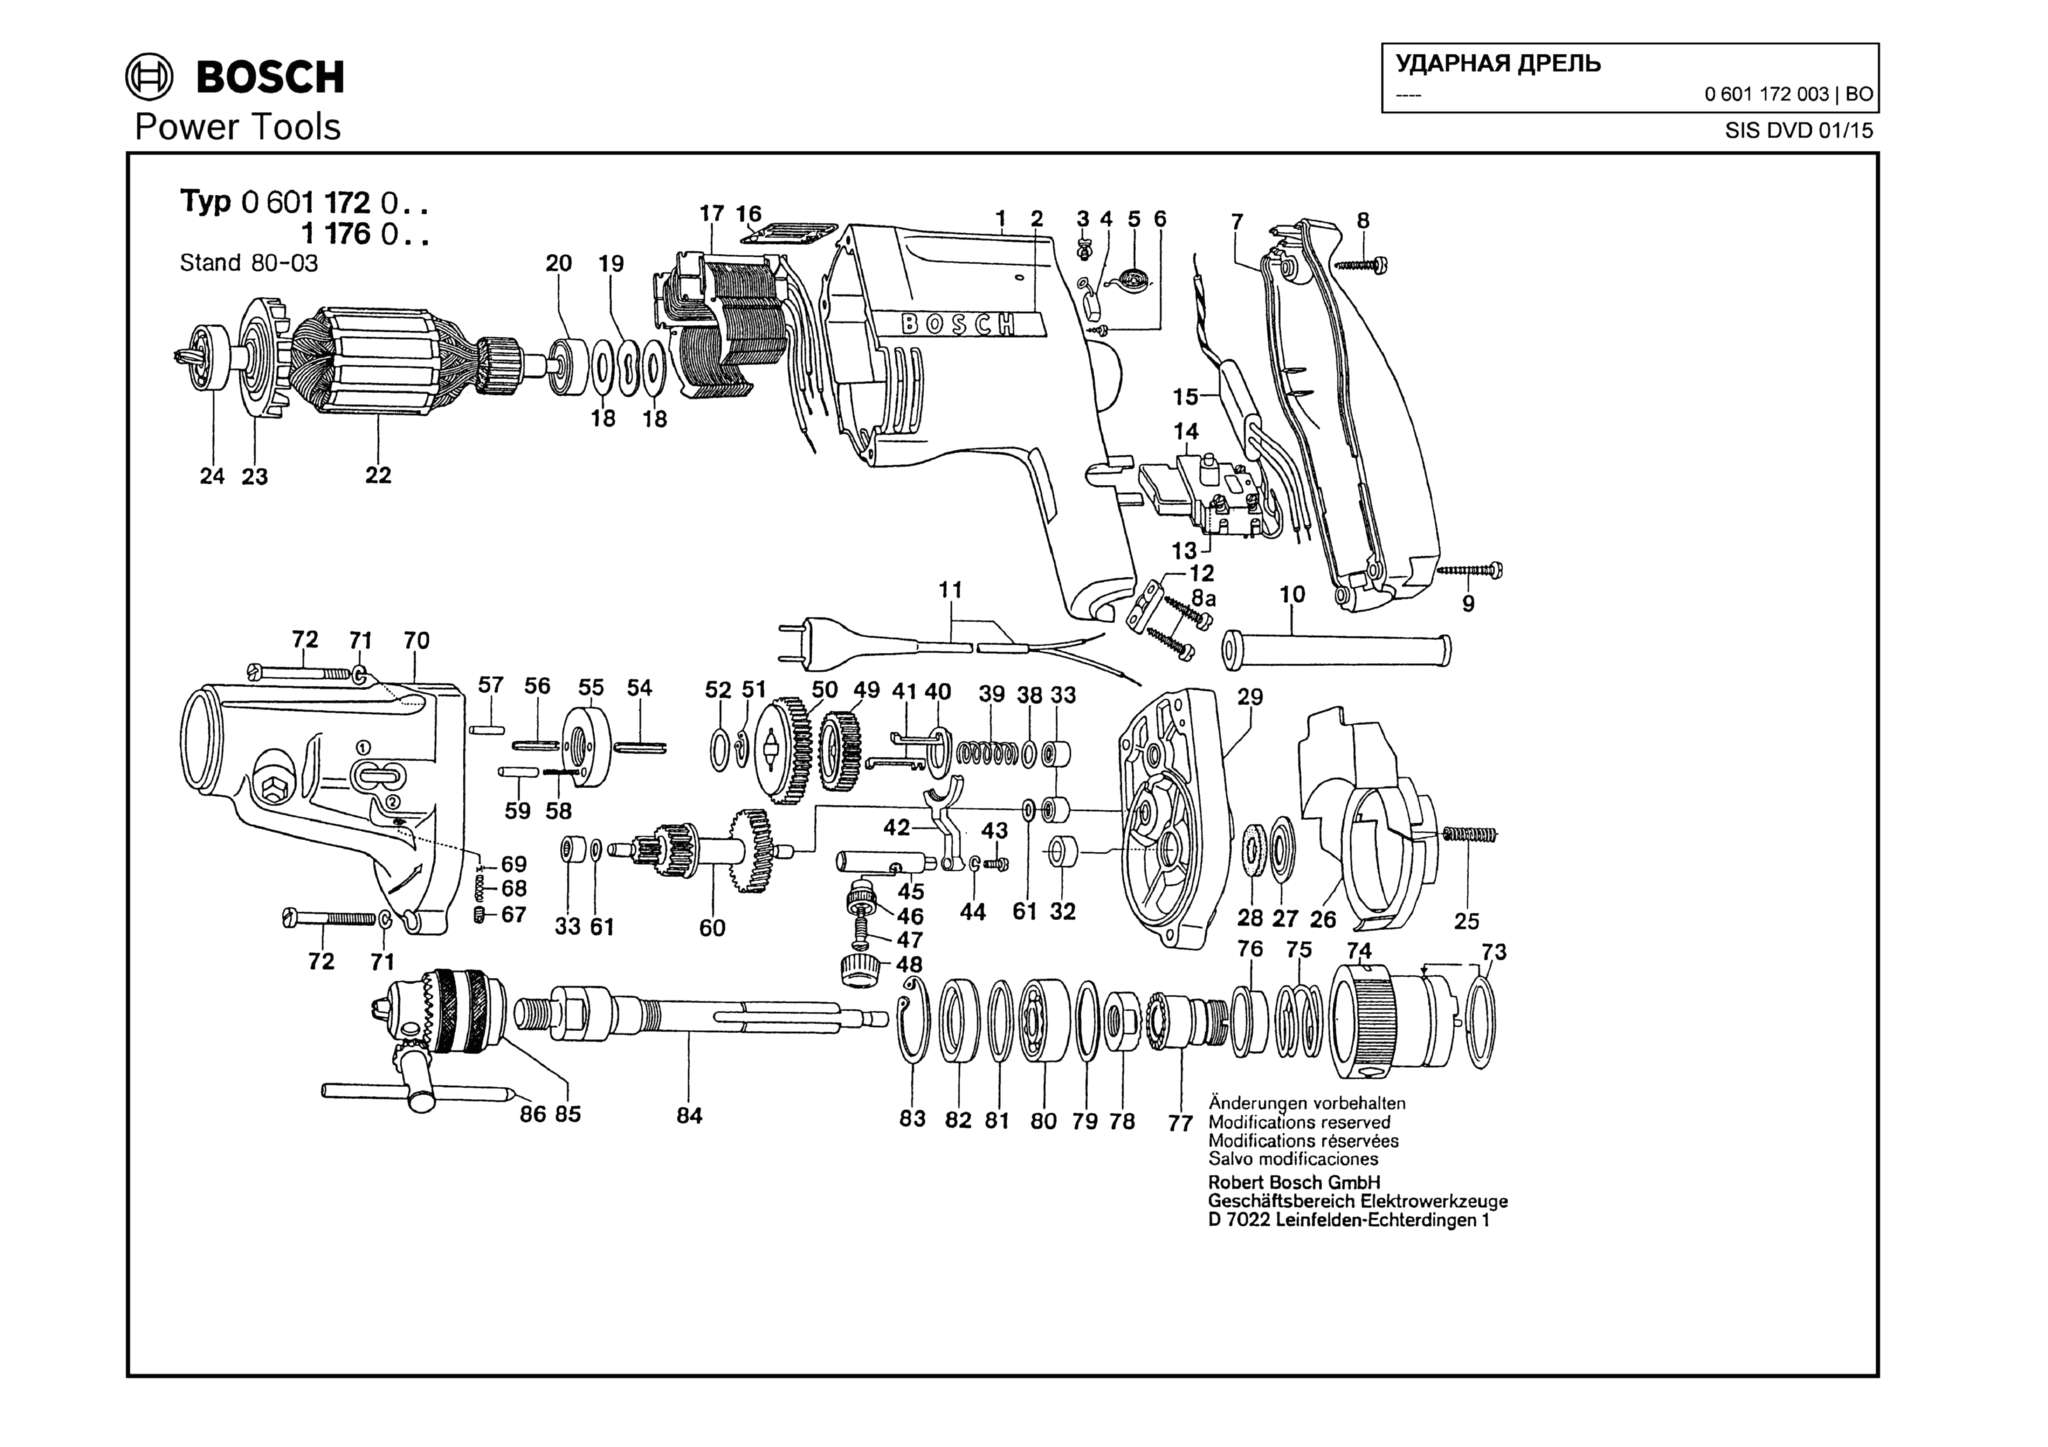 Запчасти, схема и деталировка Bosch (ТИП 0601172003)